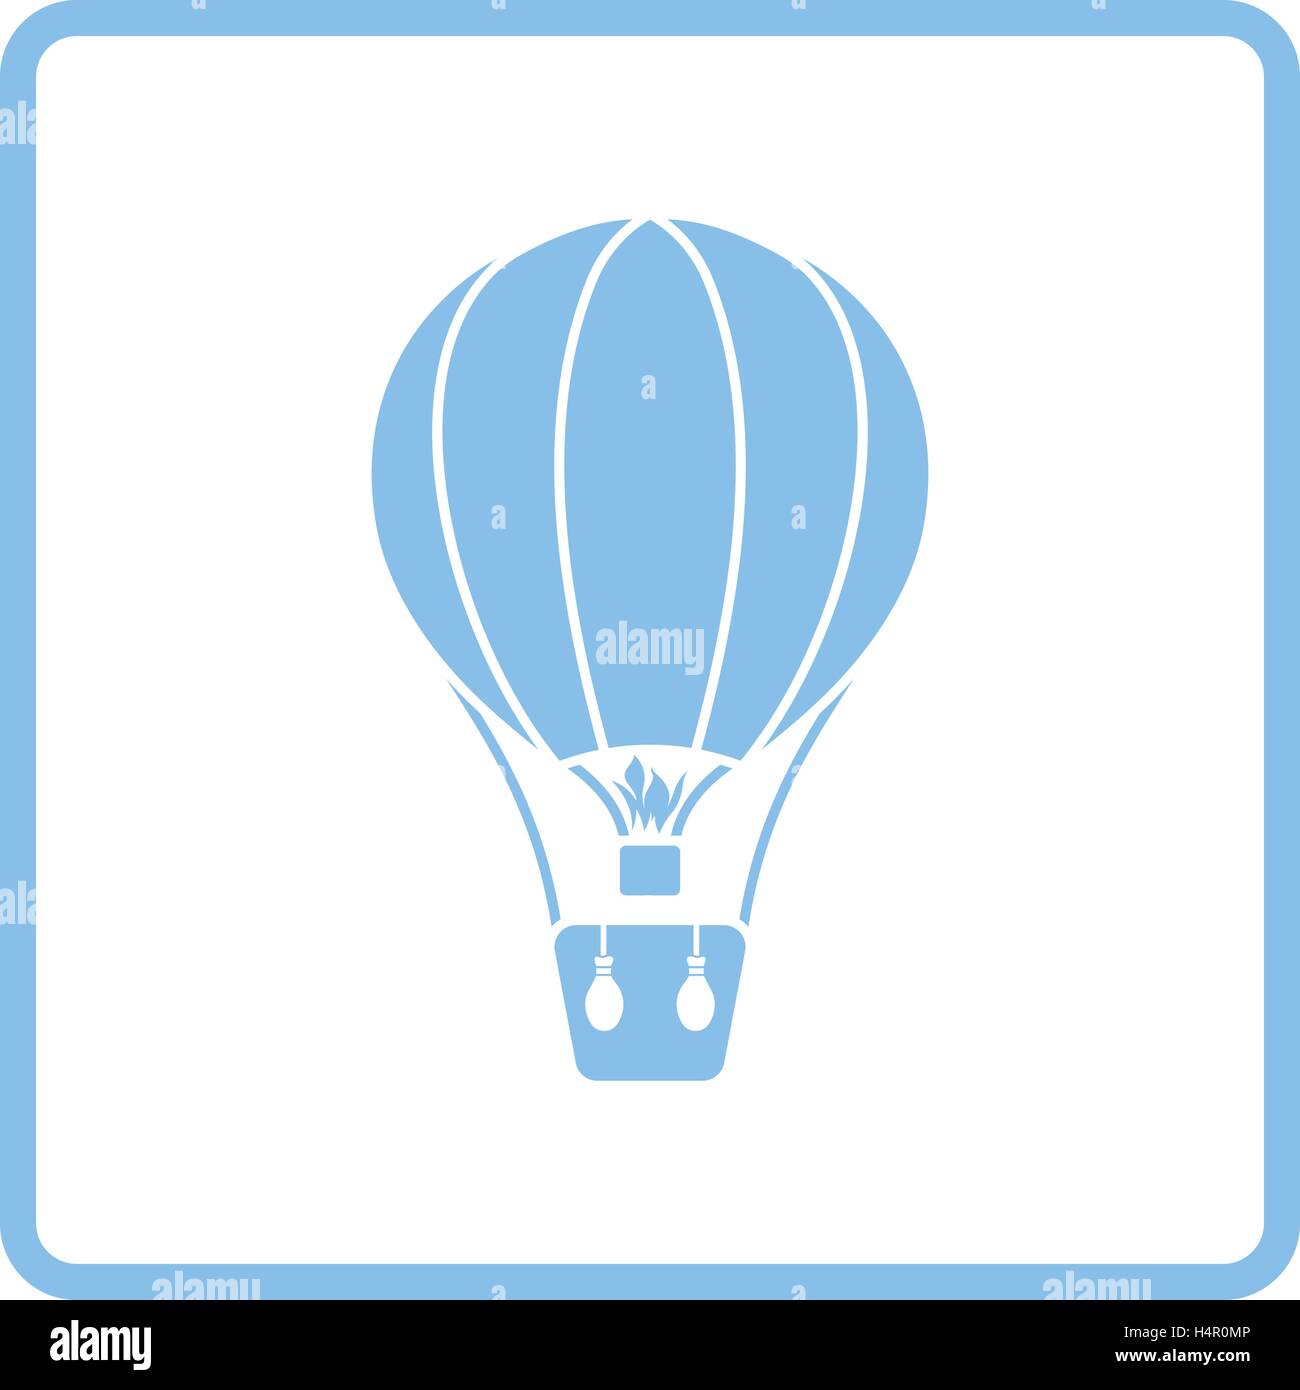 Hot air balloon icon. Blue frame design. Vector illustration. Stock Vector